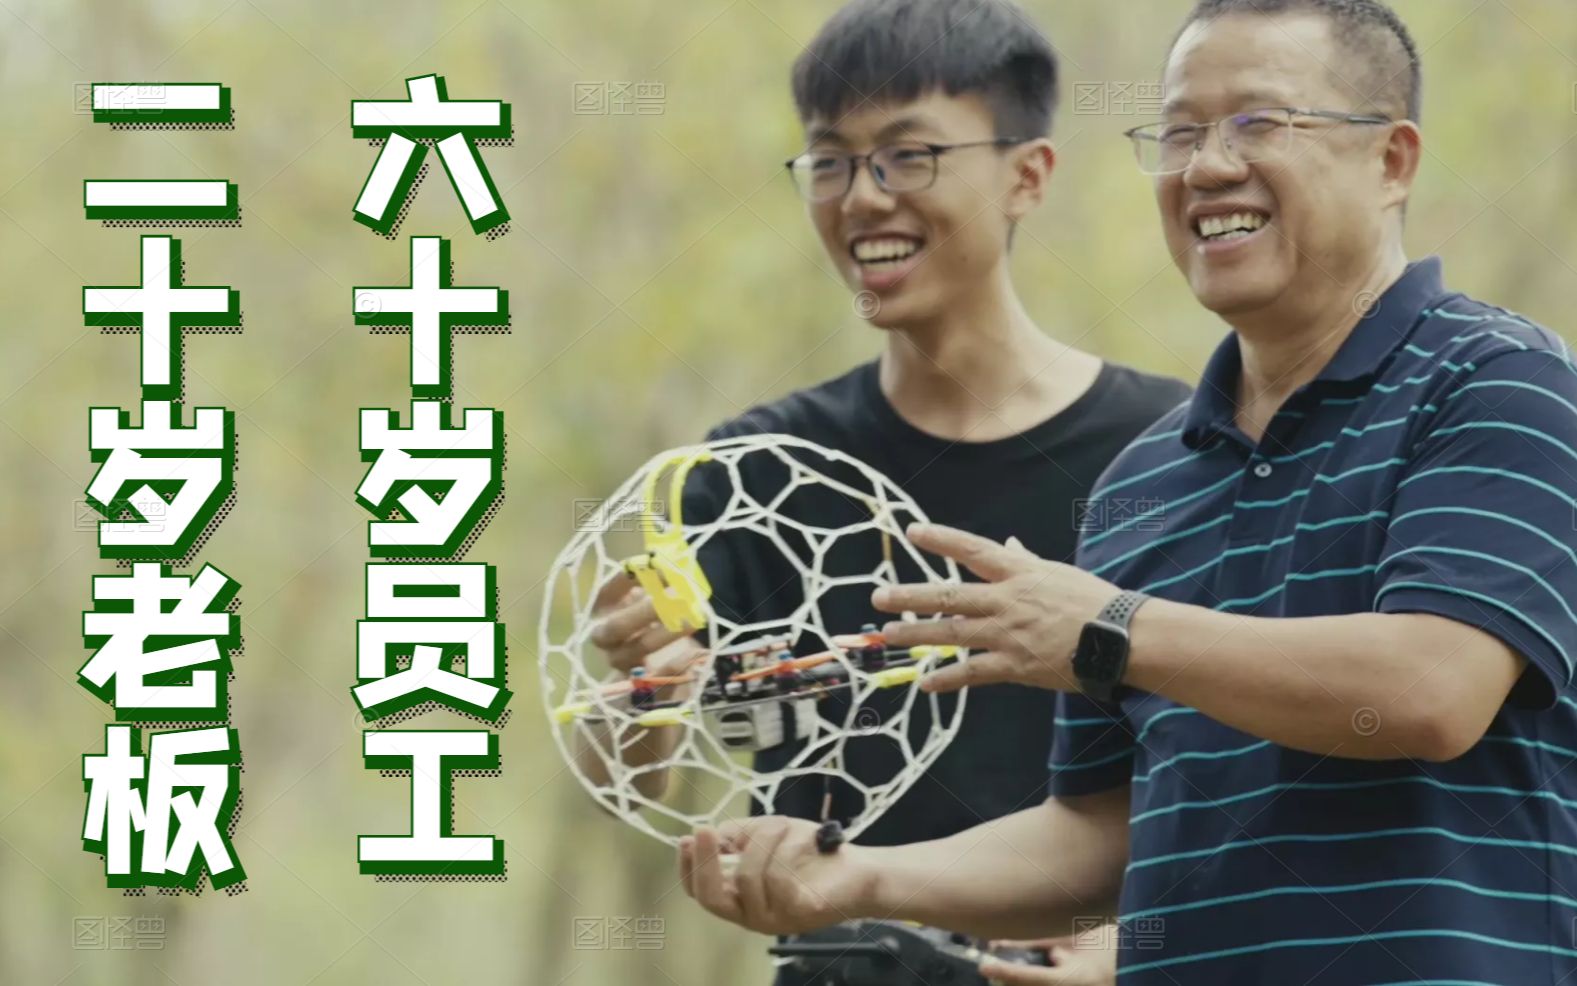 乐业中国 第二集：60岁的程序员，决定给95后打工